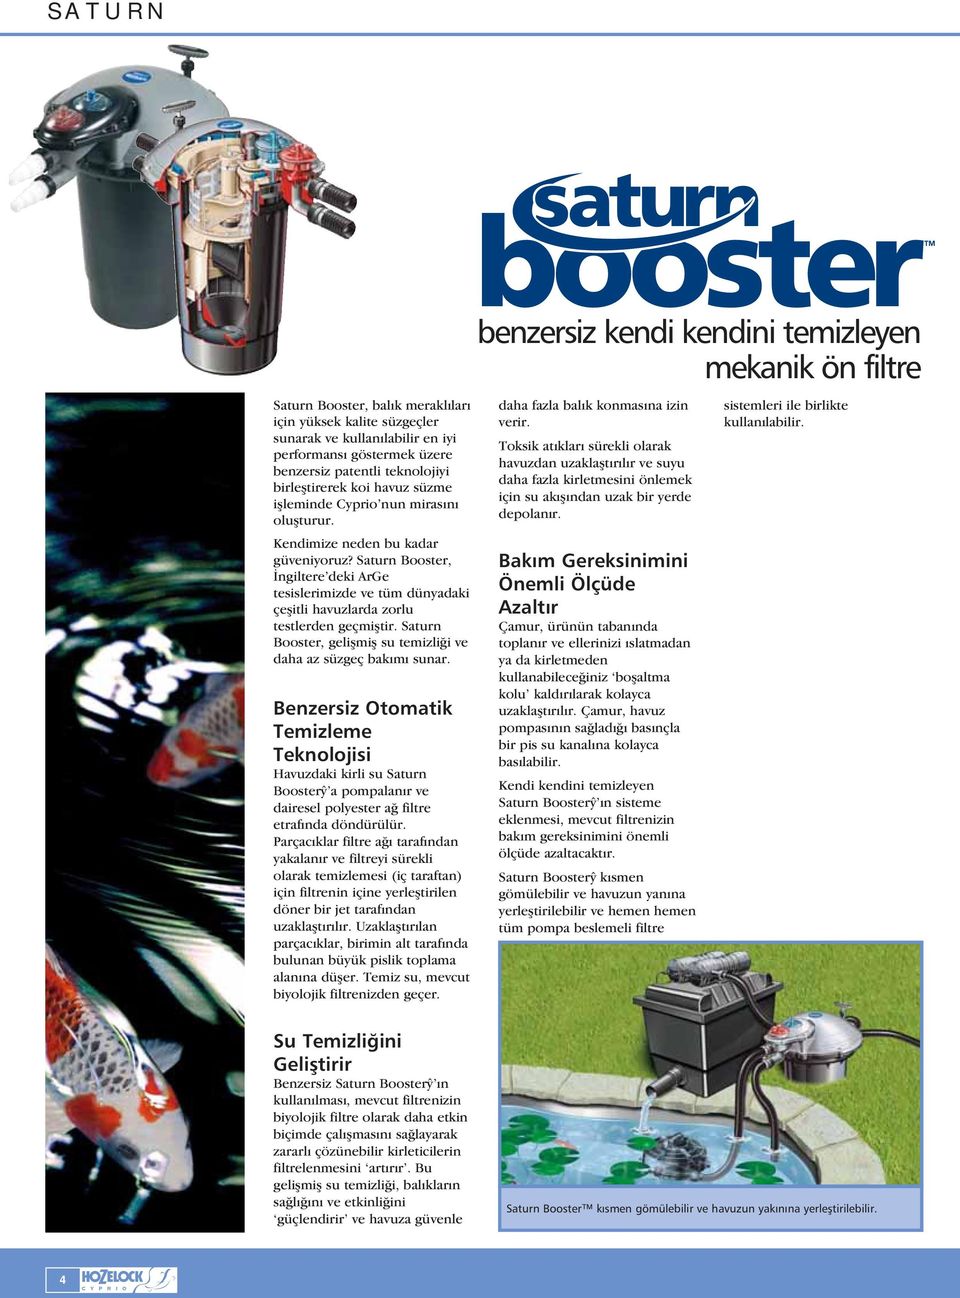 Saturn Booster, applengiltere deki ArGe tesislerimizde ve tüm dünyadaki çe itli havuzlarda zorlu testlerden geçmi tir. Saturn Booster, geli mi su temizliœi ve daha az süzgeç bakımı sunar.